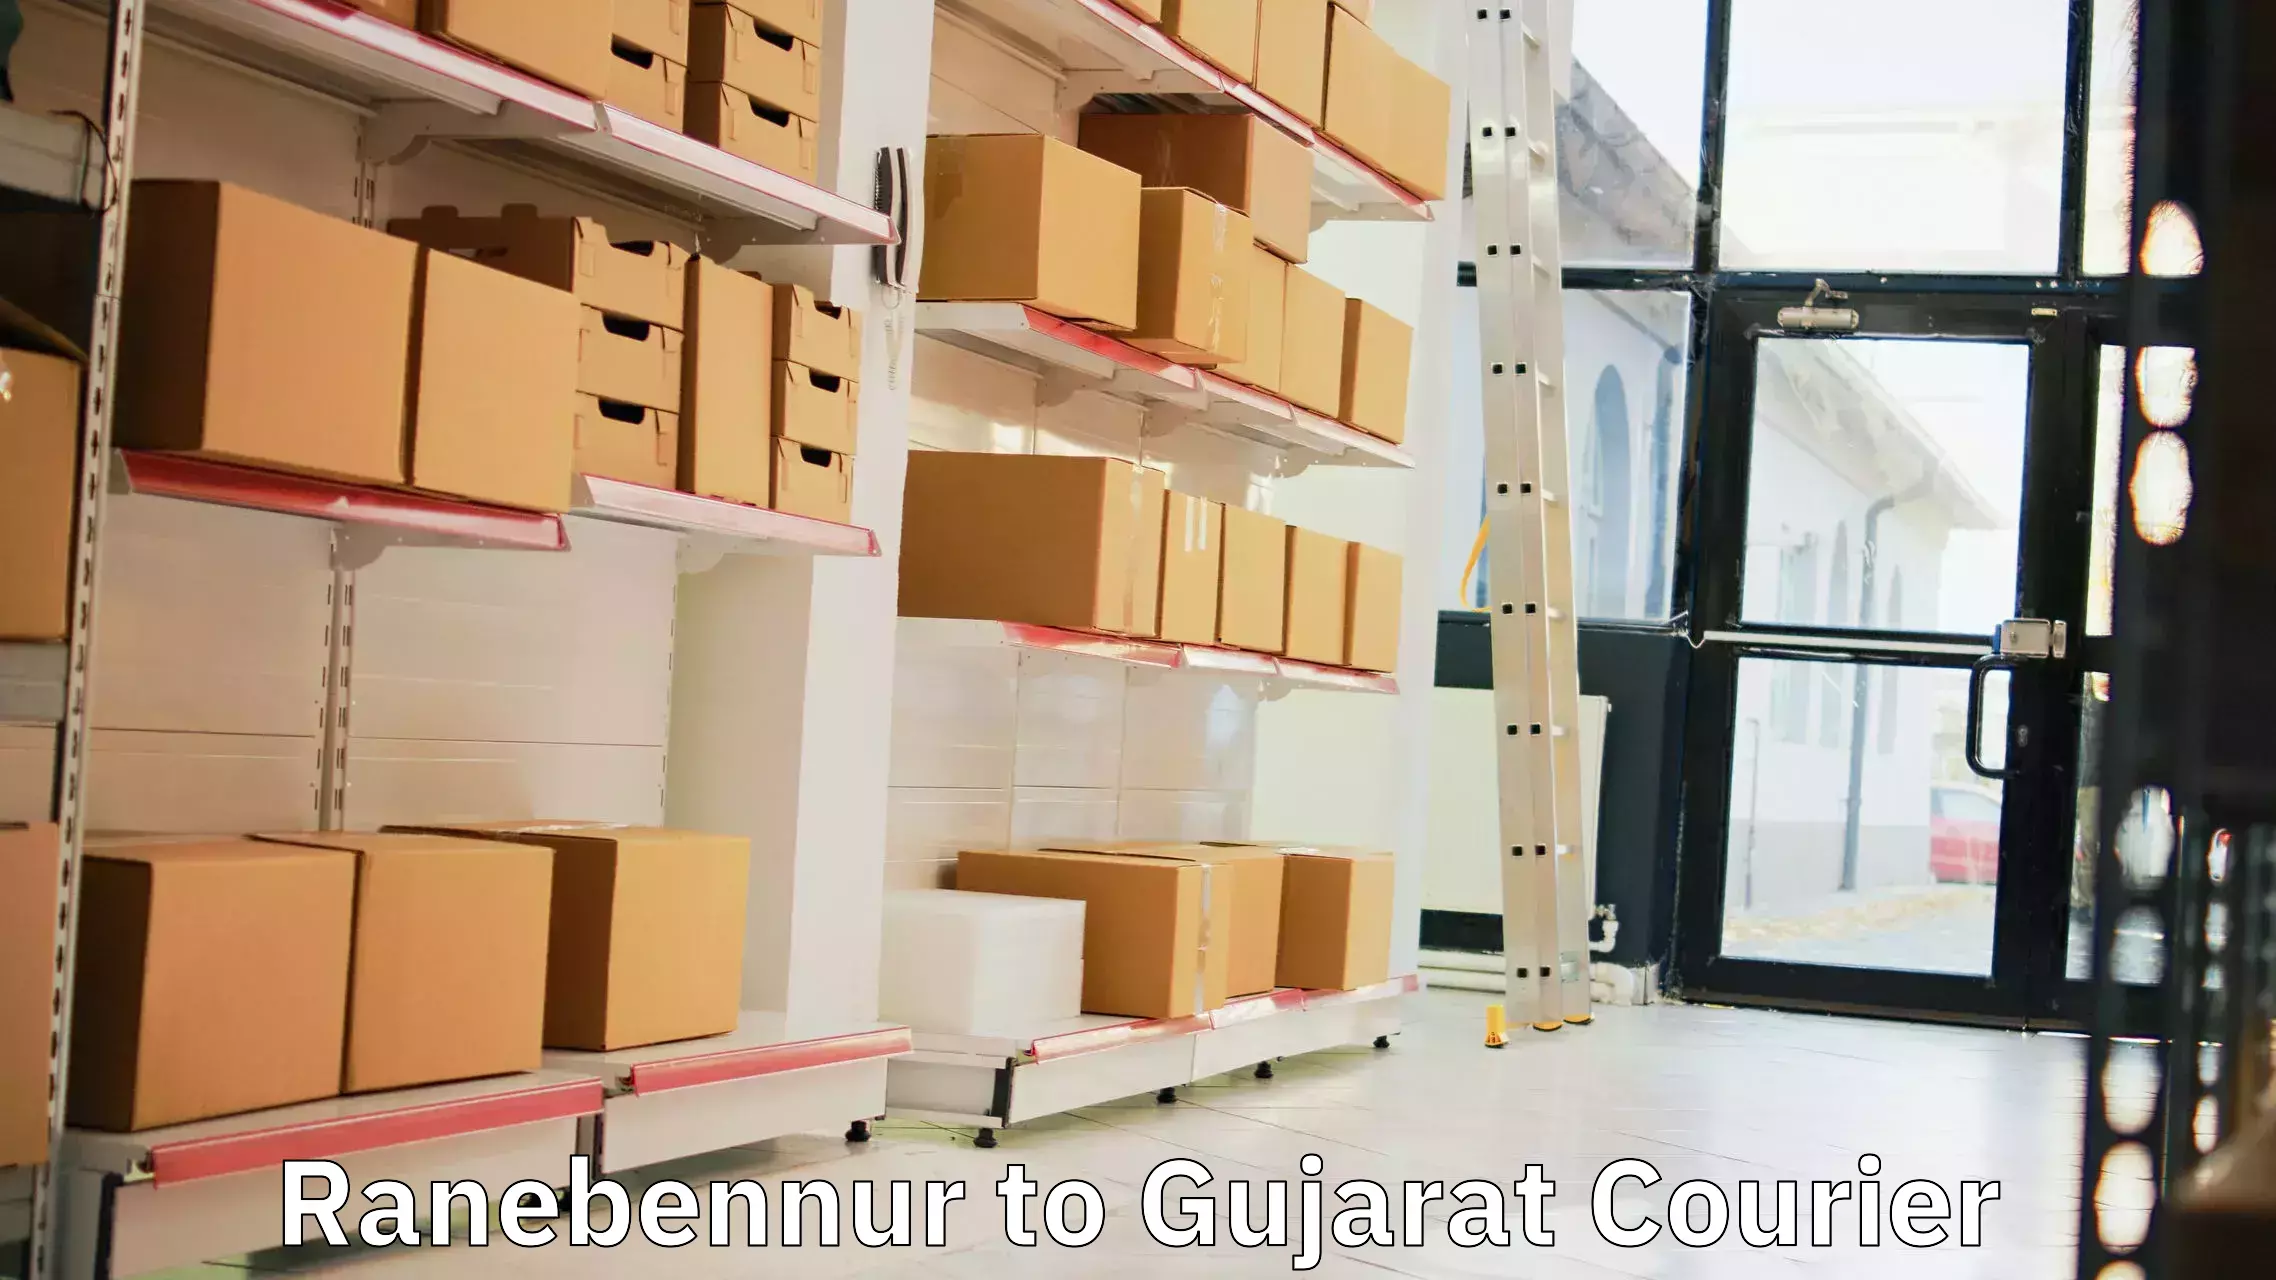 Premium courier solutions in Ranebennur to Veraval